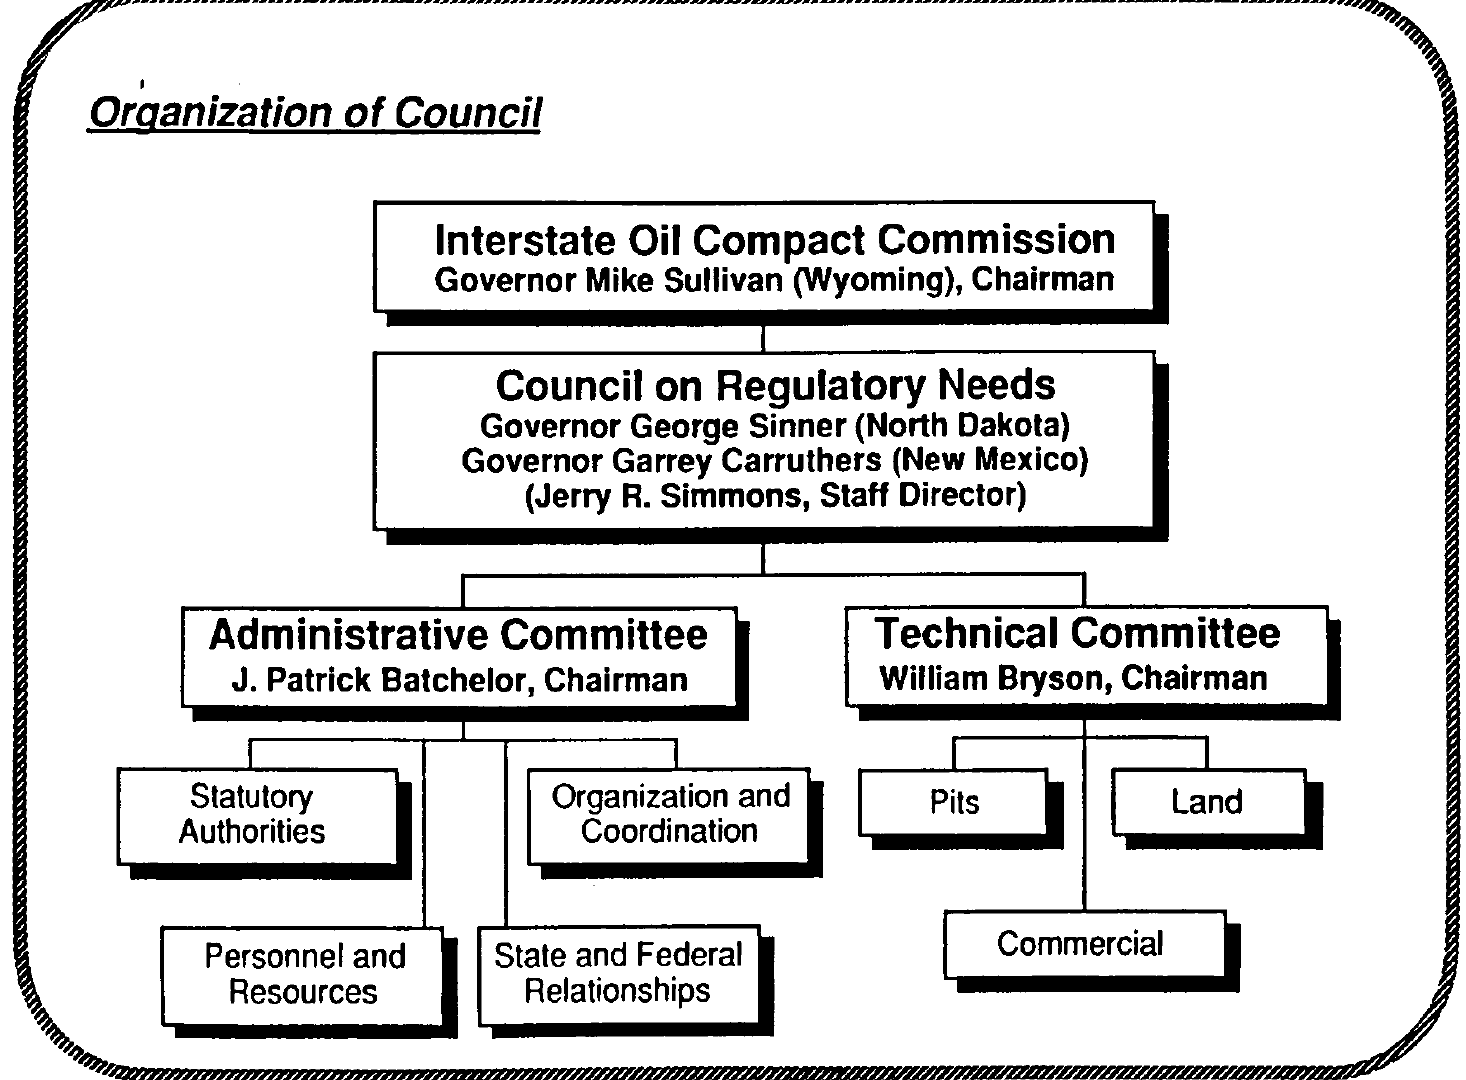 Council on Regulatory Needs